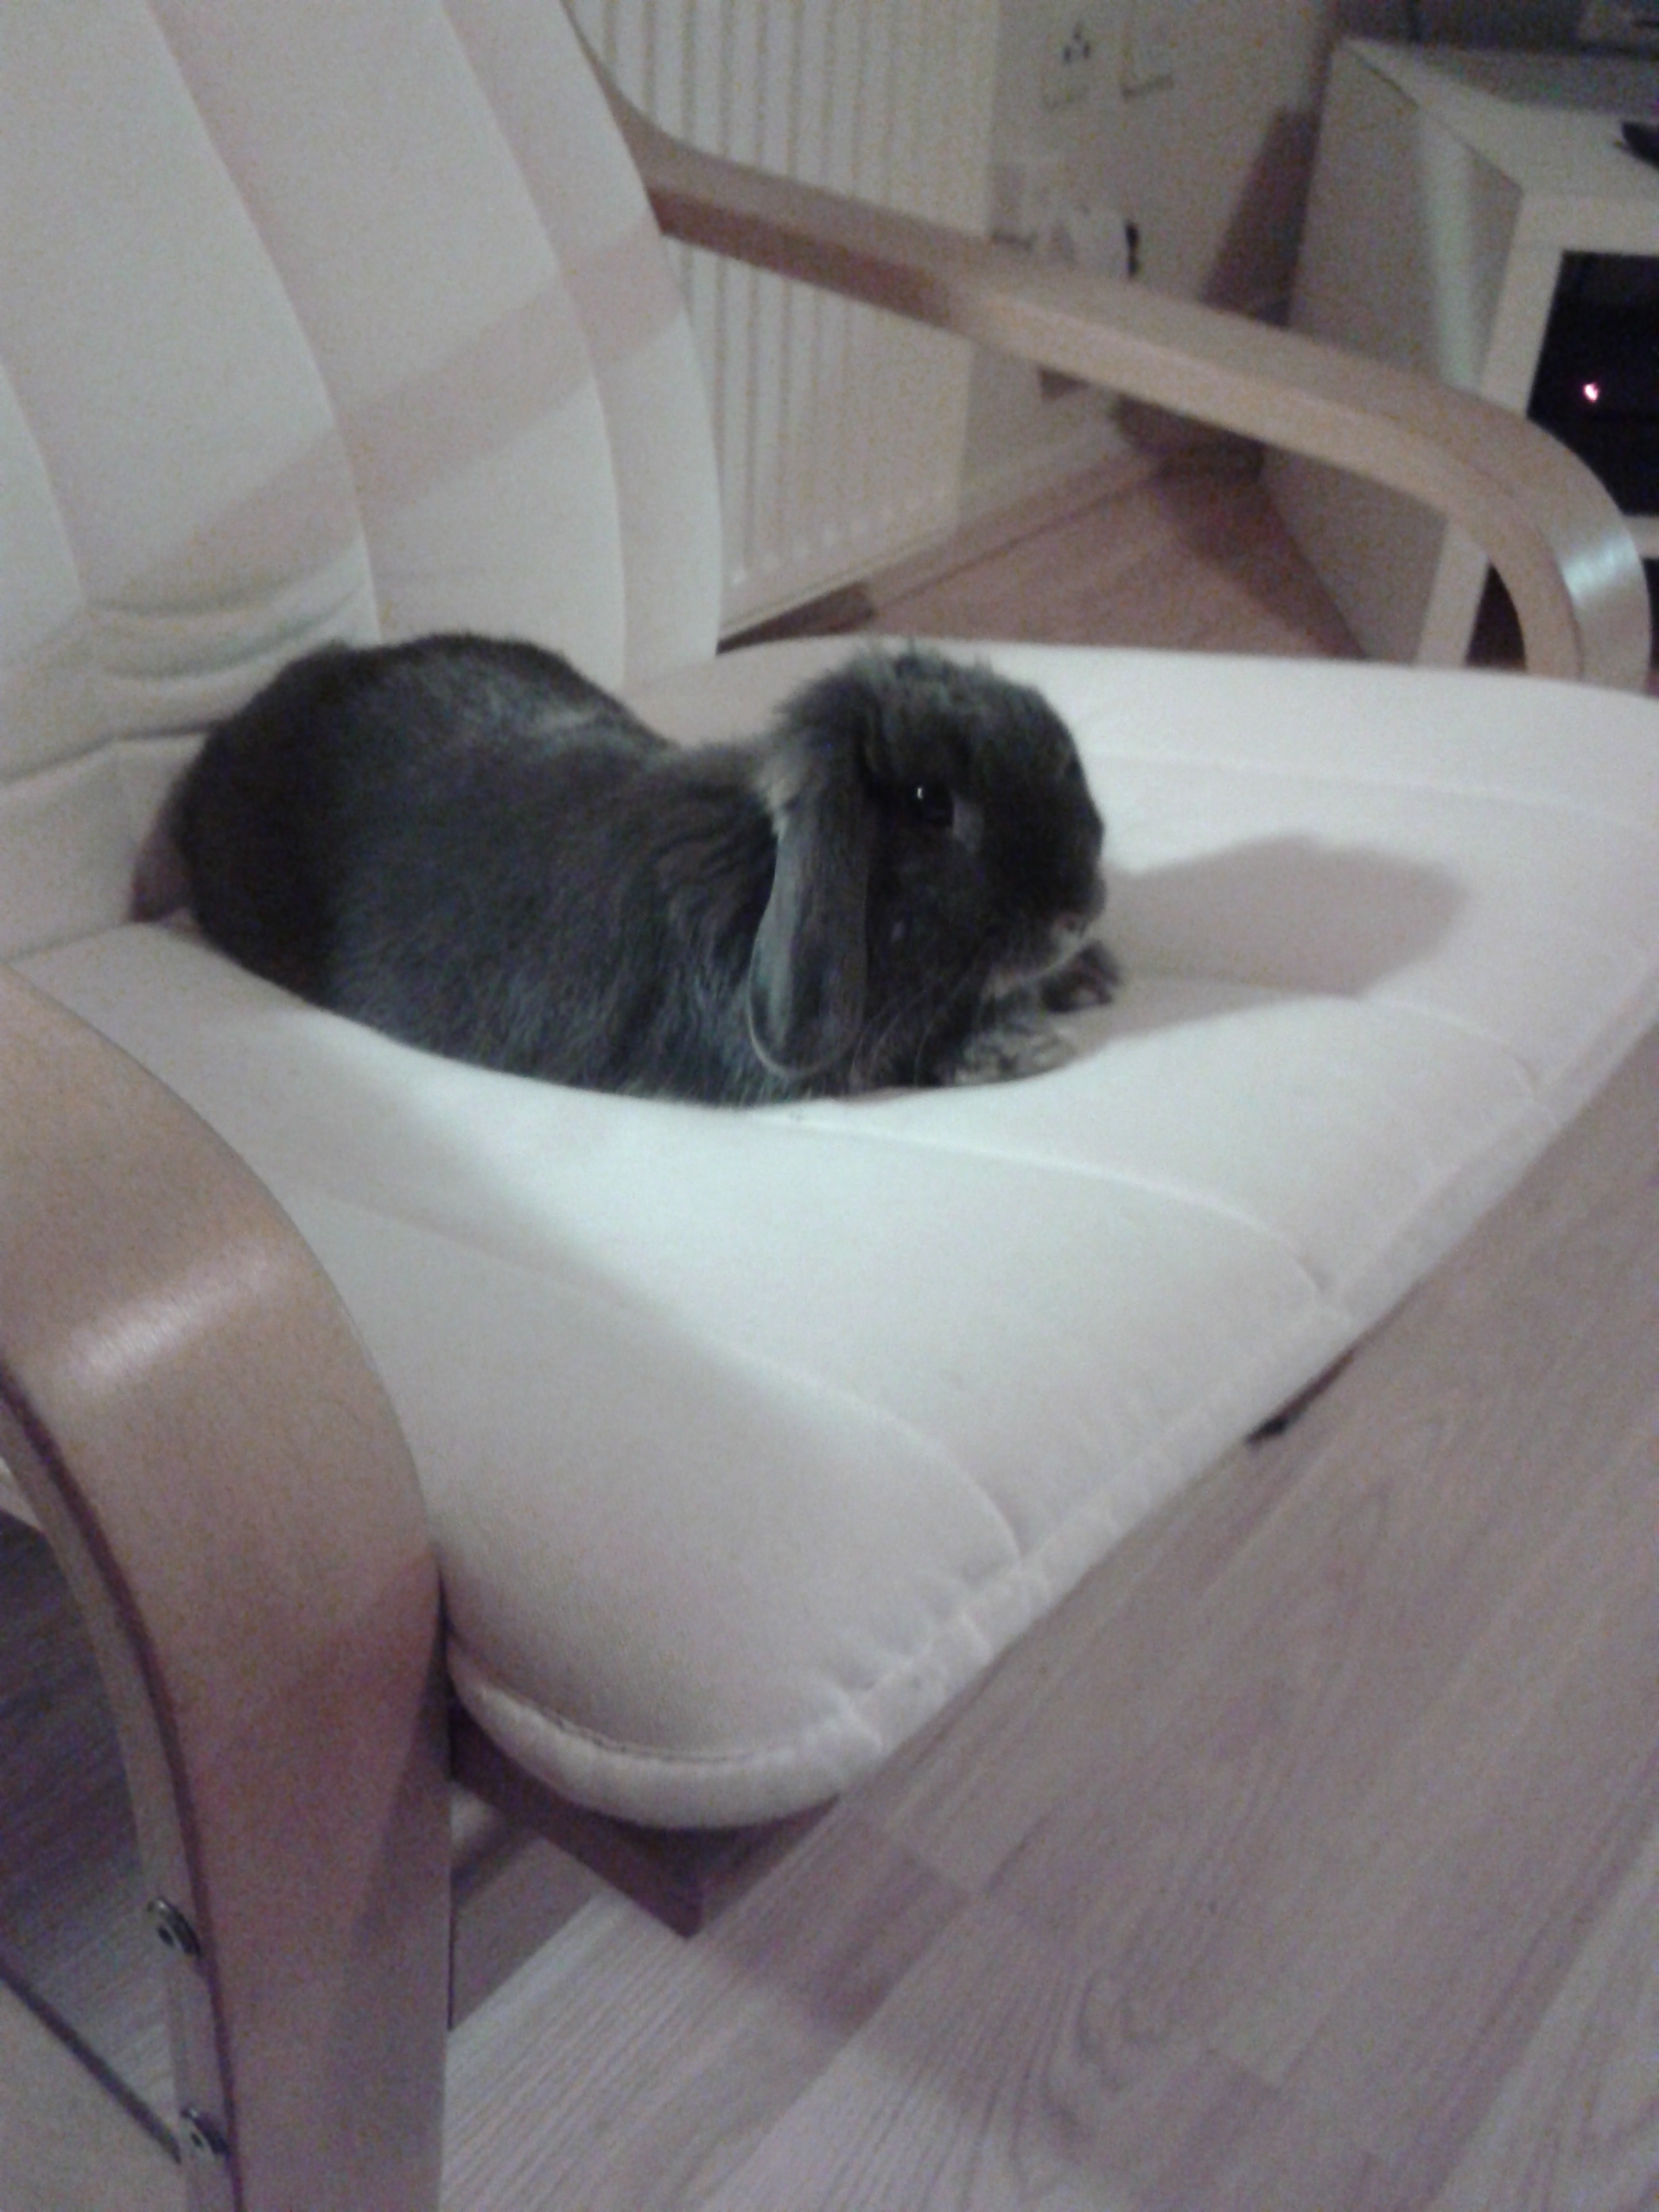 Bunny Has Already Claimed That Chair